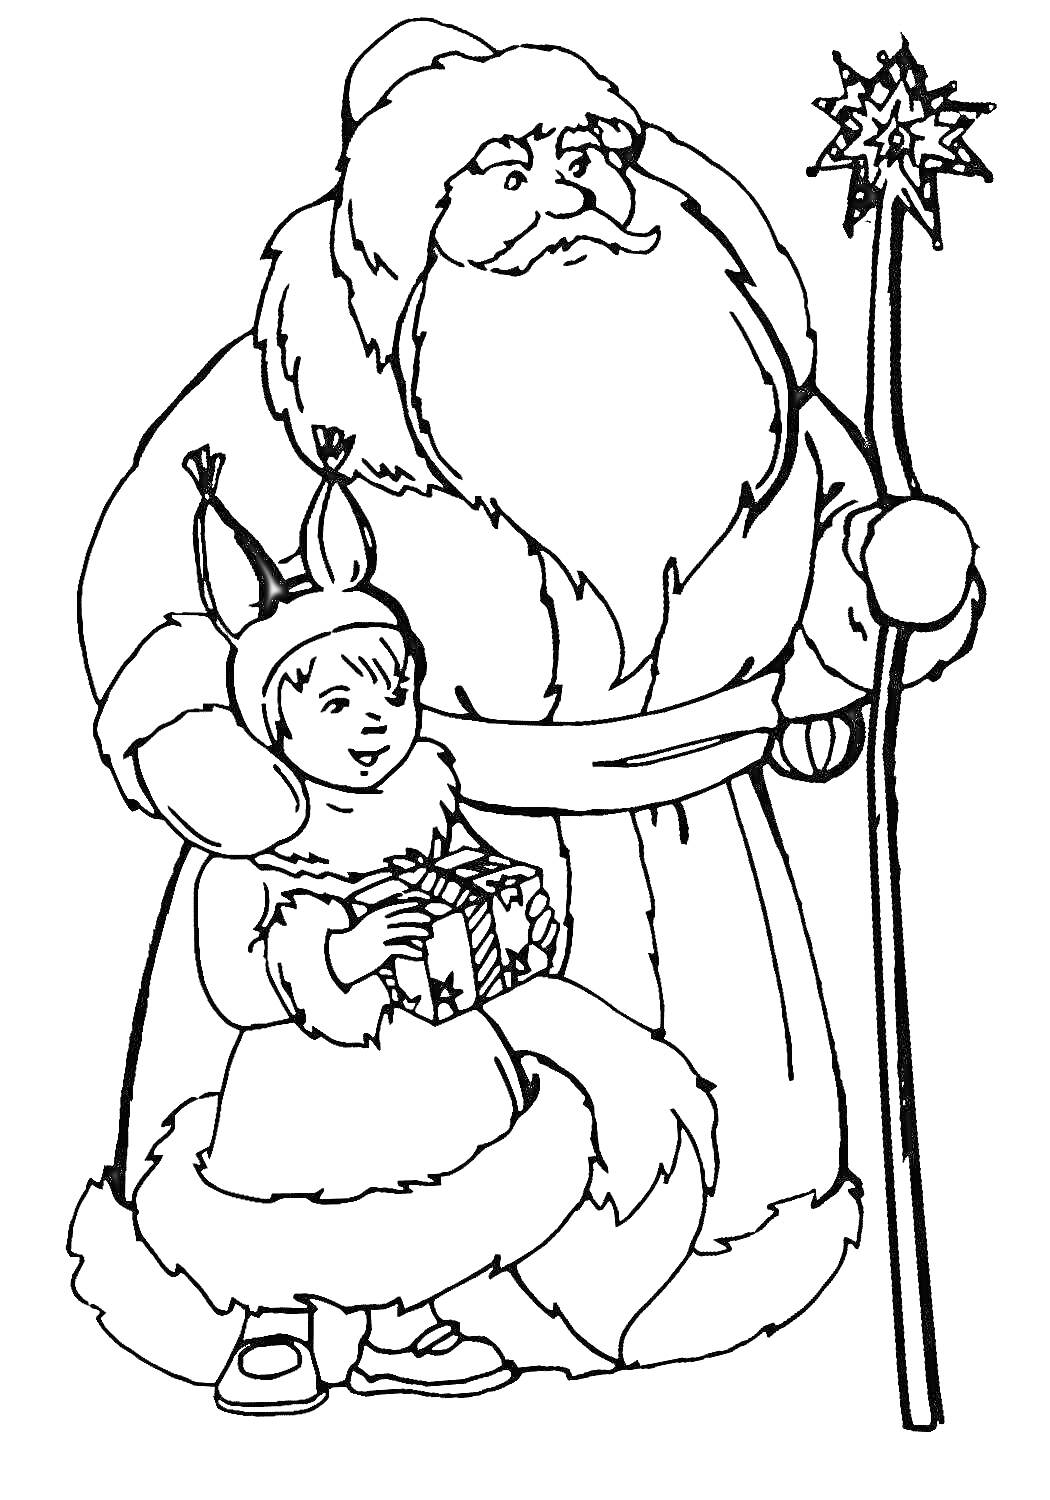 Раскраска Мороз Иванович с посохом и девочка с подарком